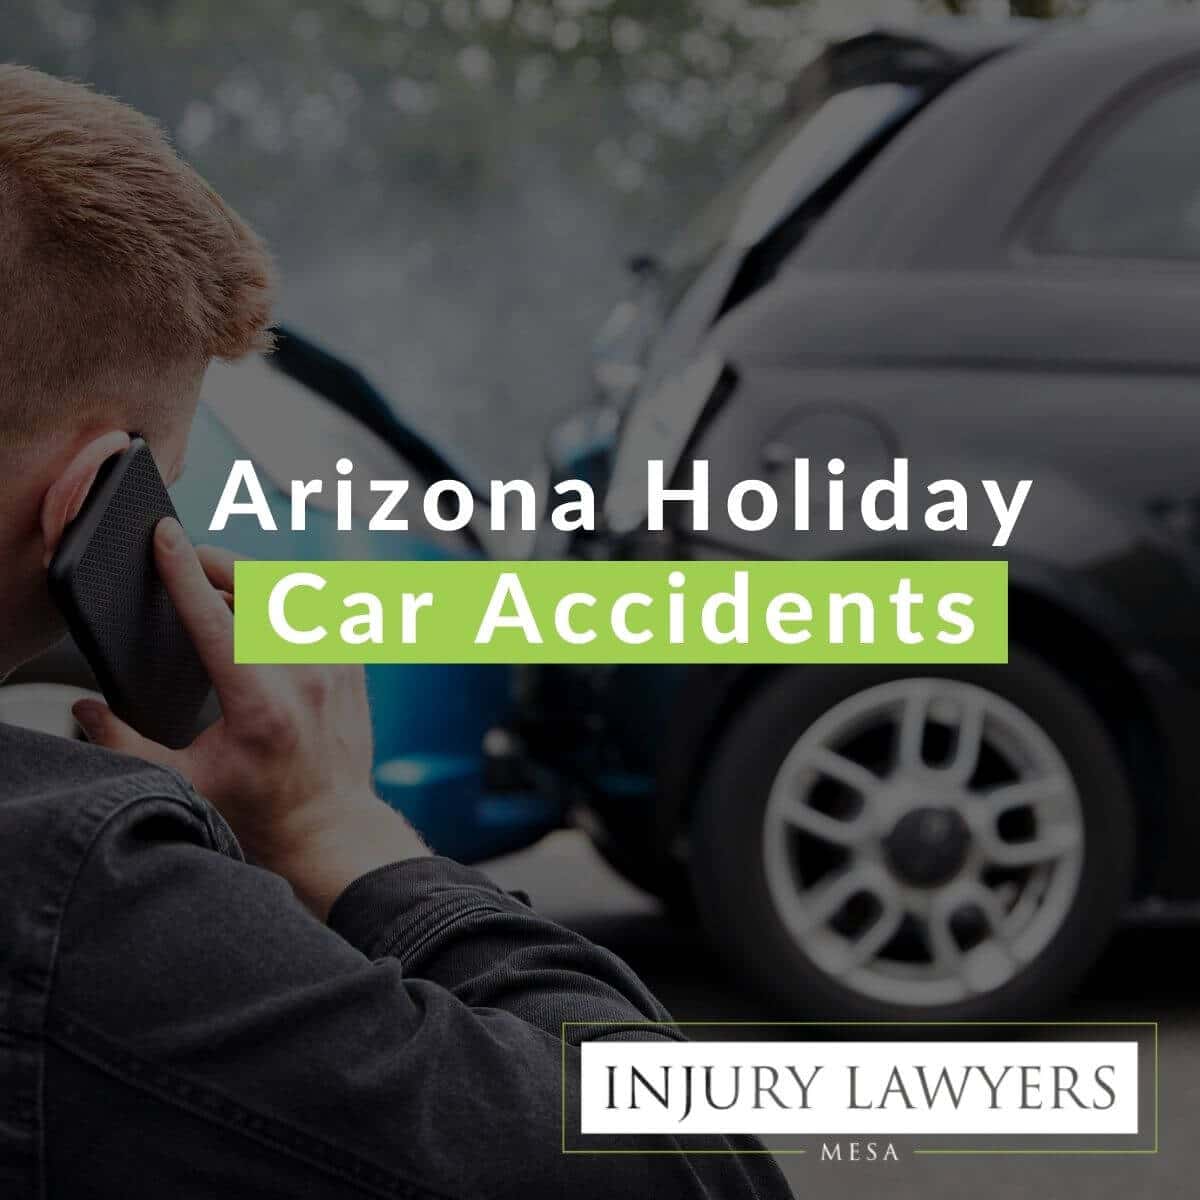 Arizona Holiday Car Accidents